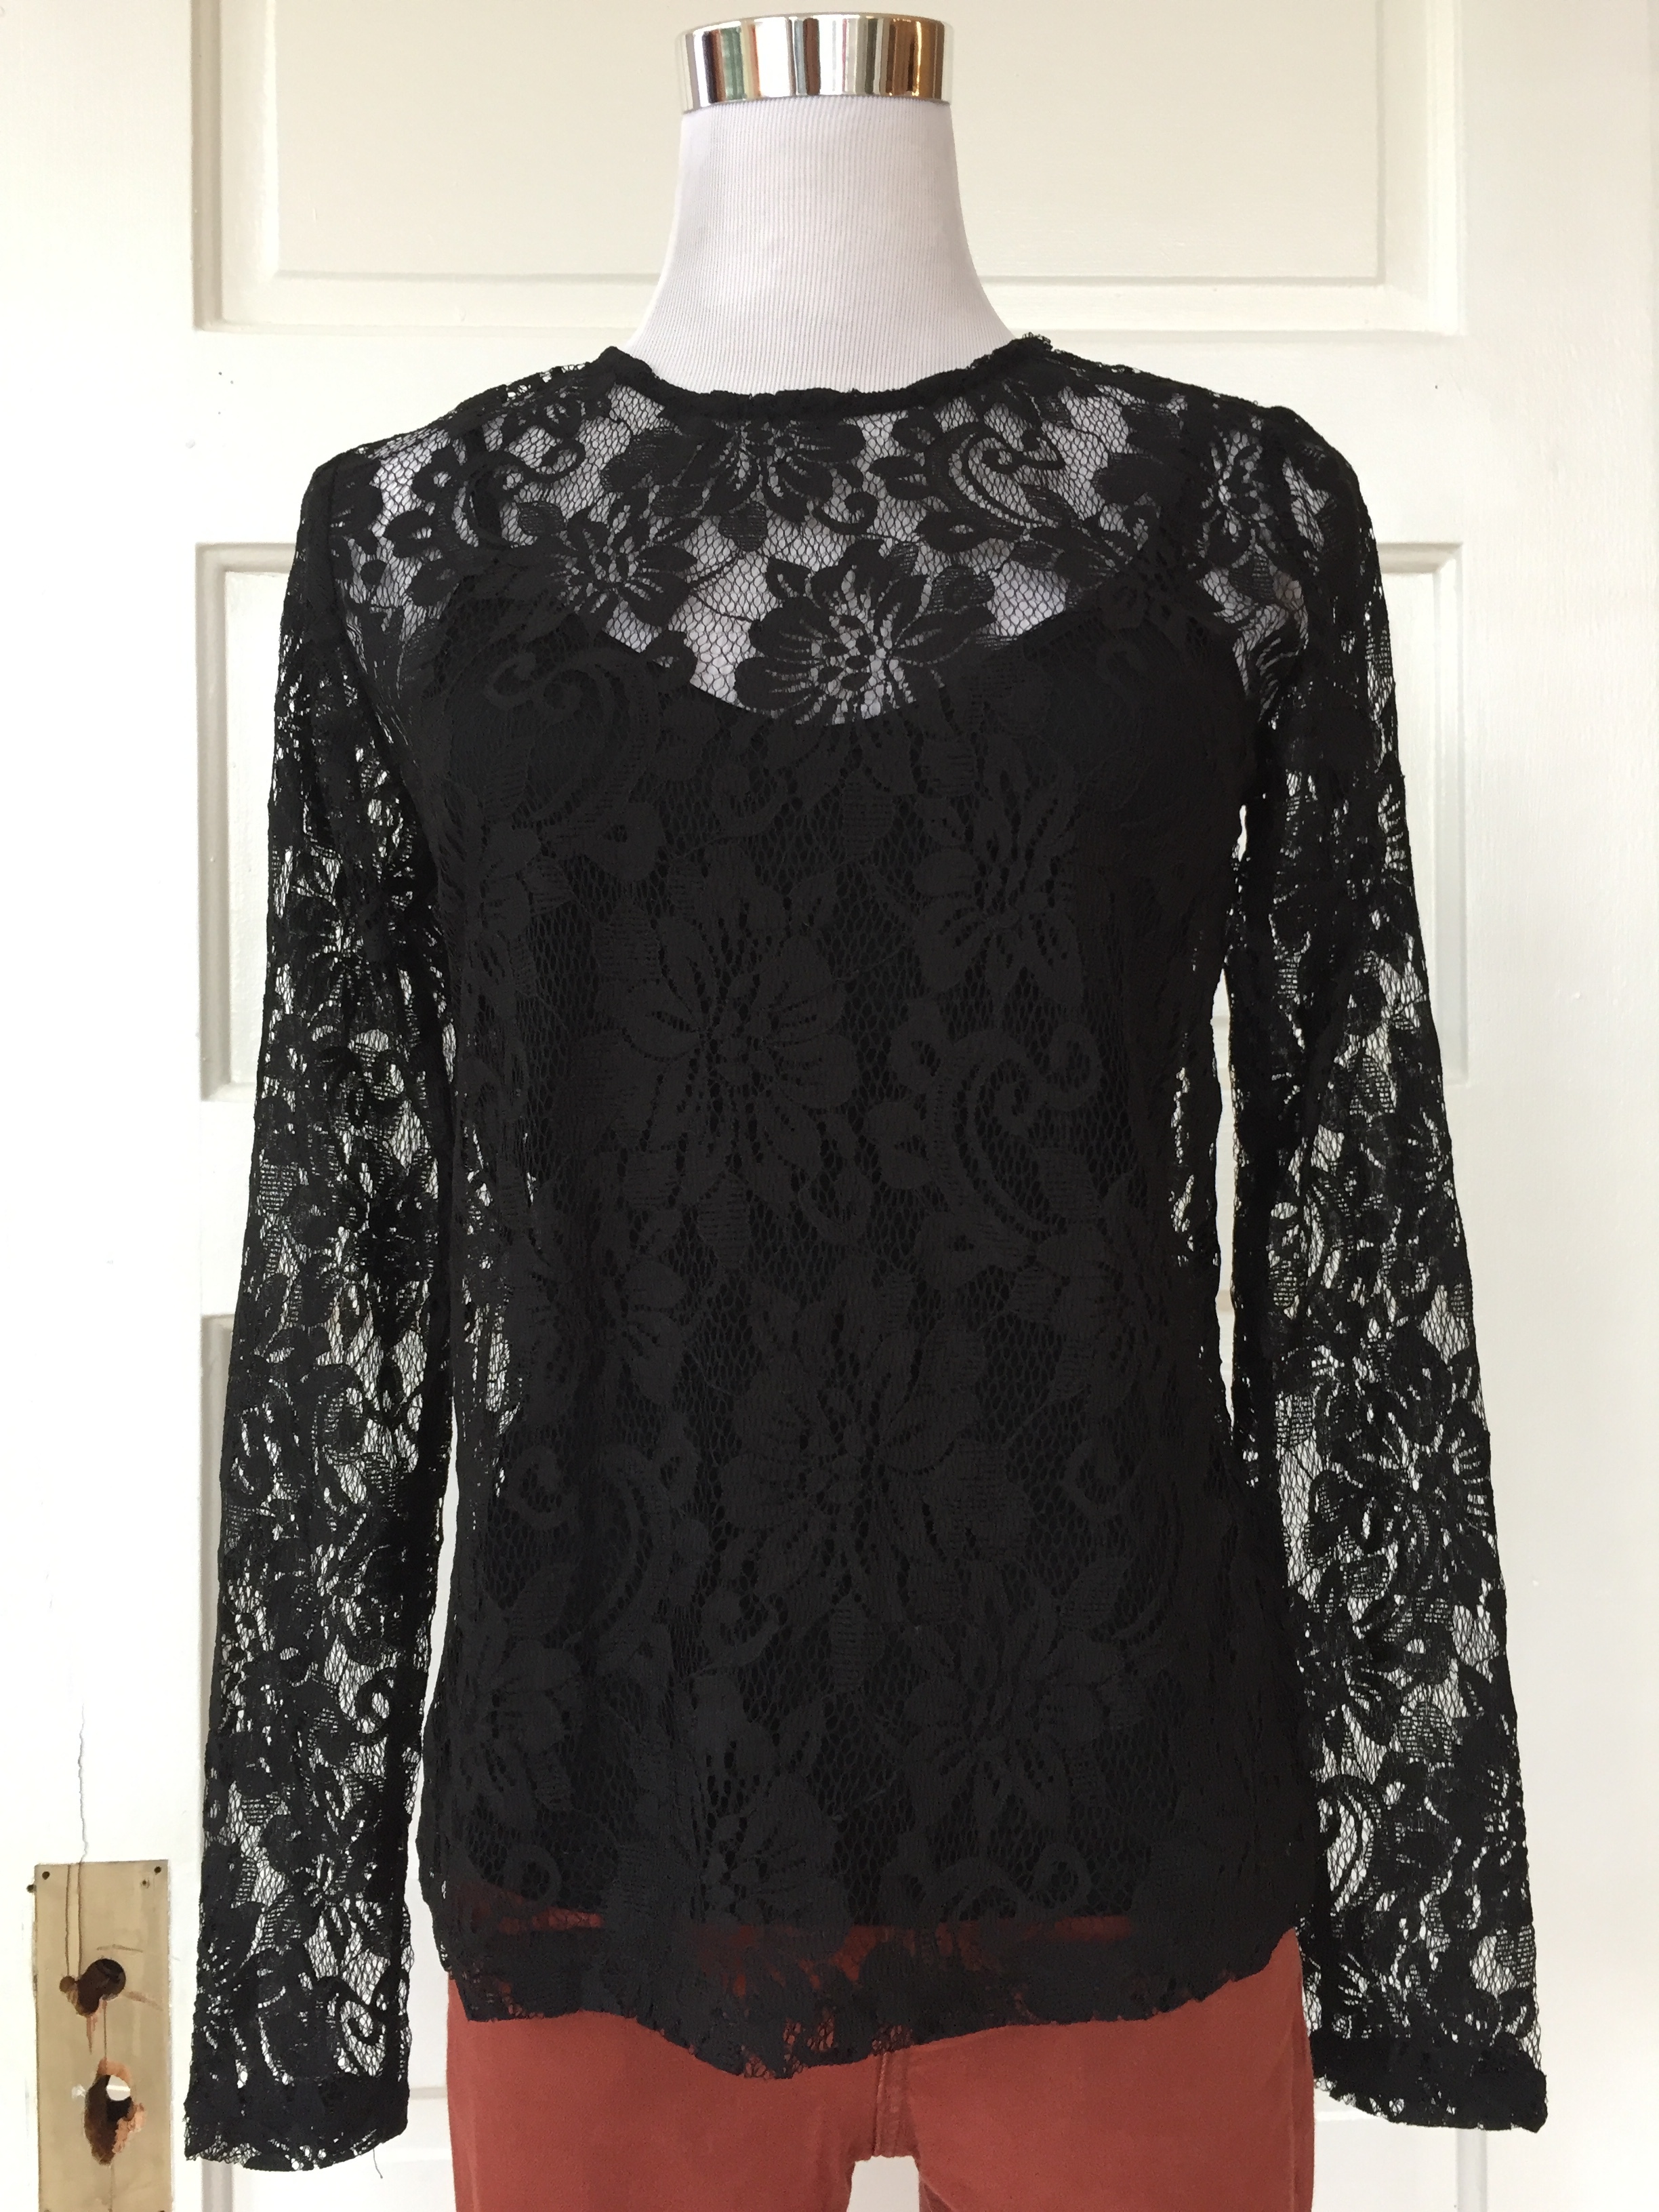 Black lace top ($38)